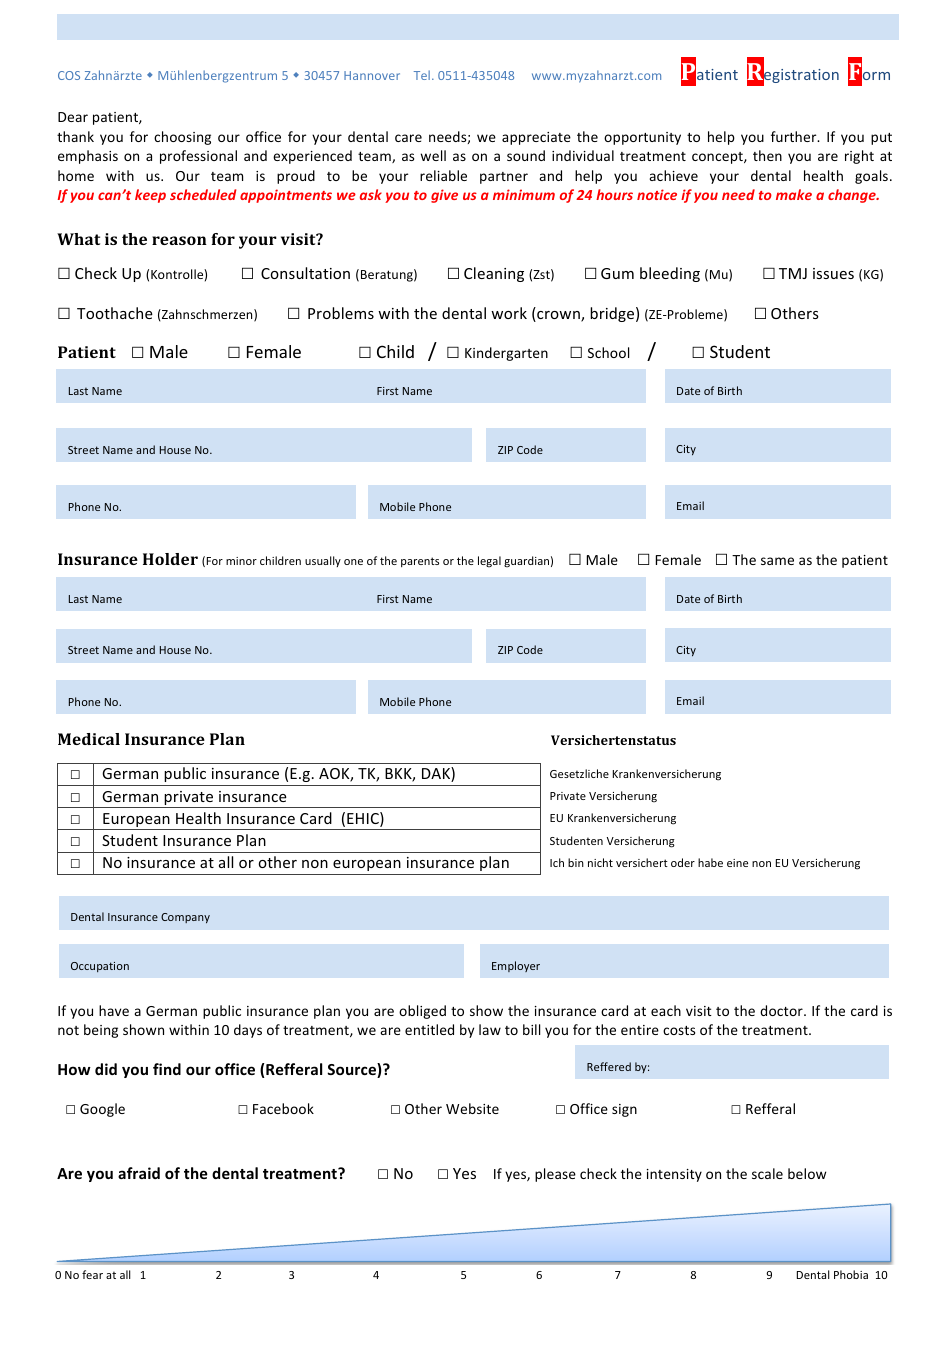 Patient Registration Form - Cos Zahnarzte (English / German), Page 1